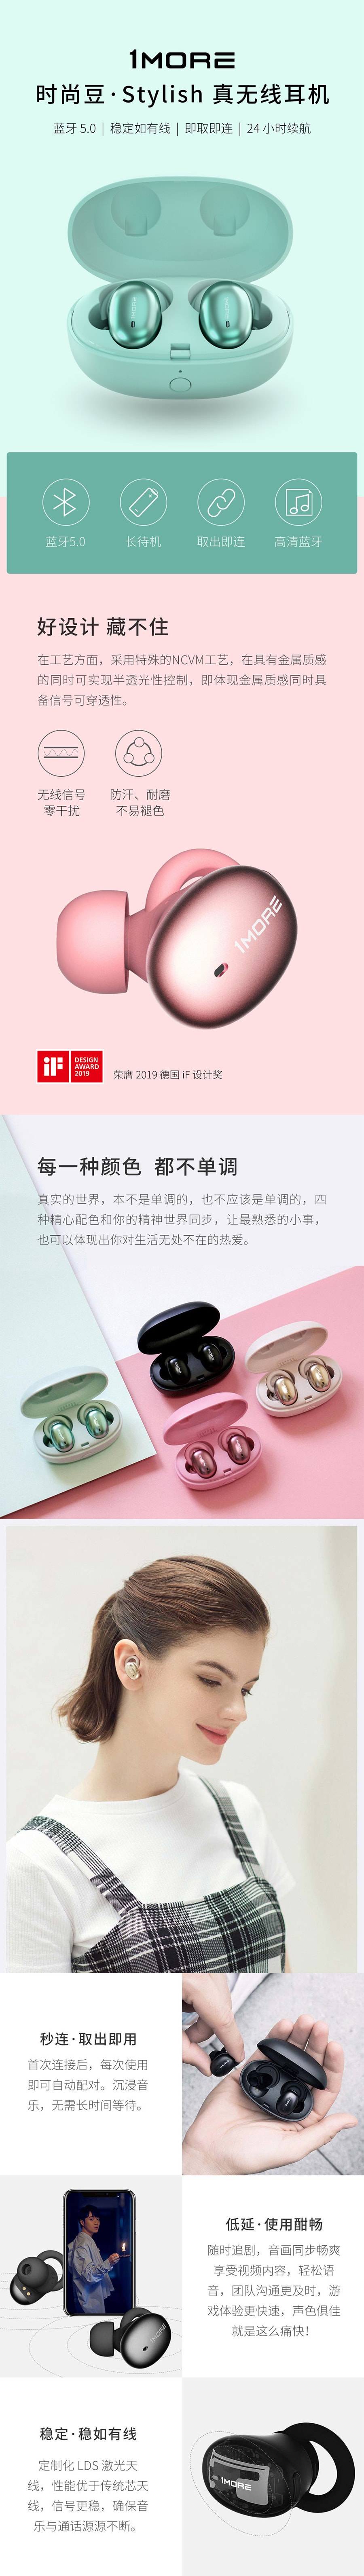 【中国直邮】小米有品1MORE Stylish时尚真无线耳机E1026BT-I绿色 1对/盒